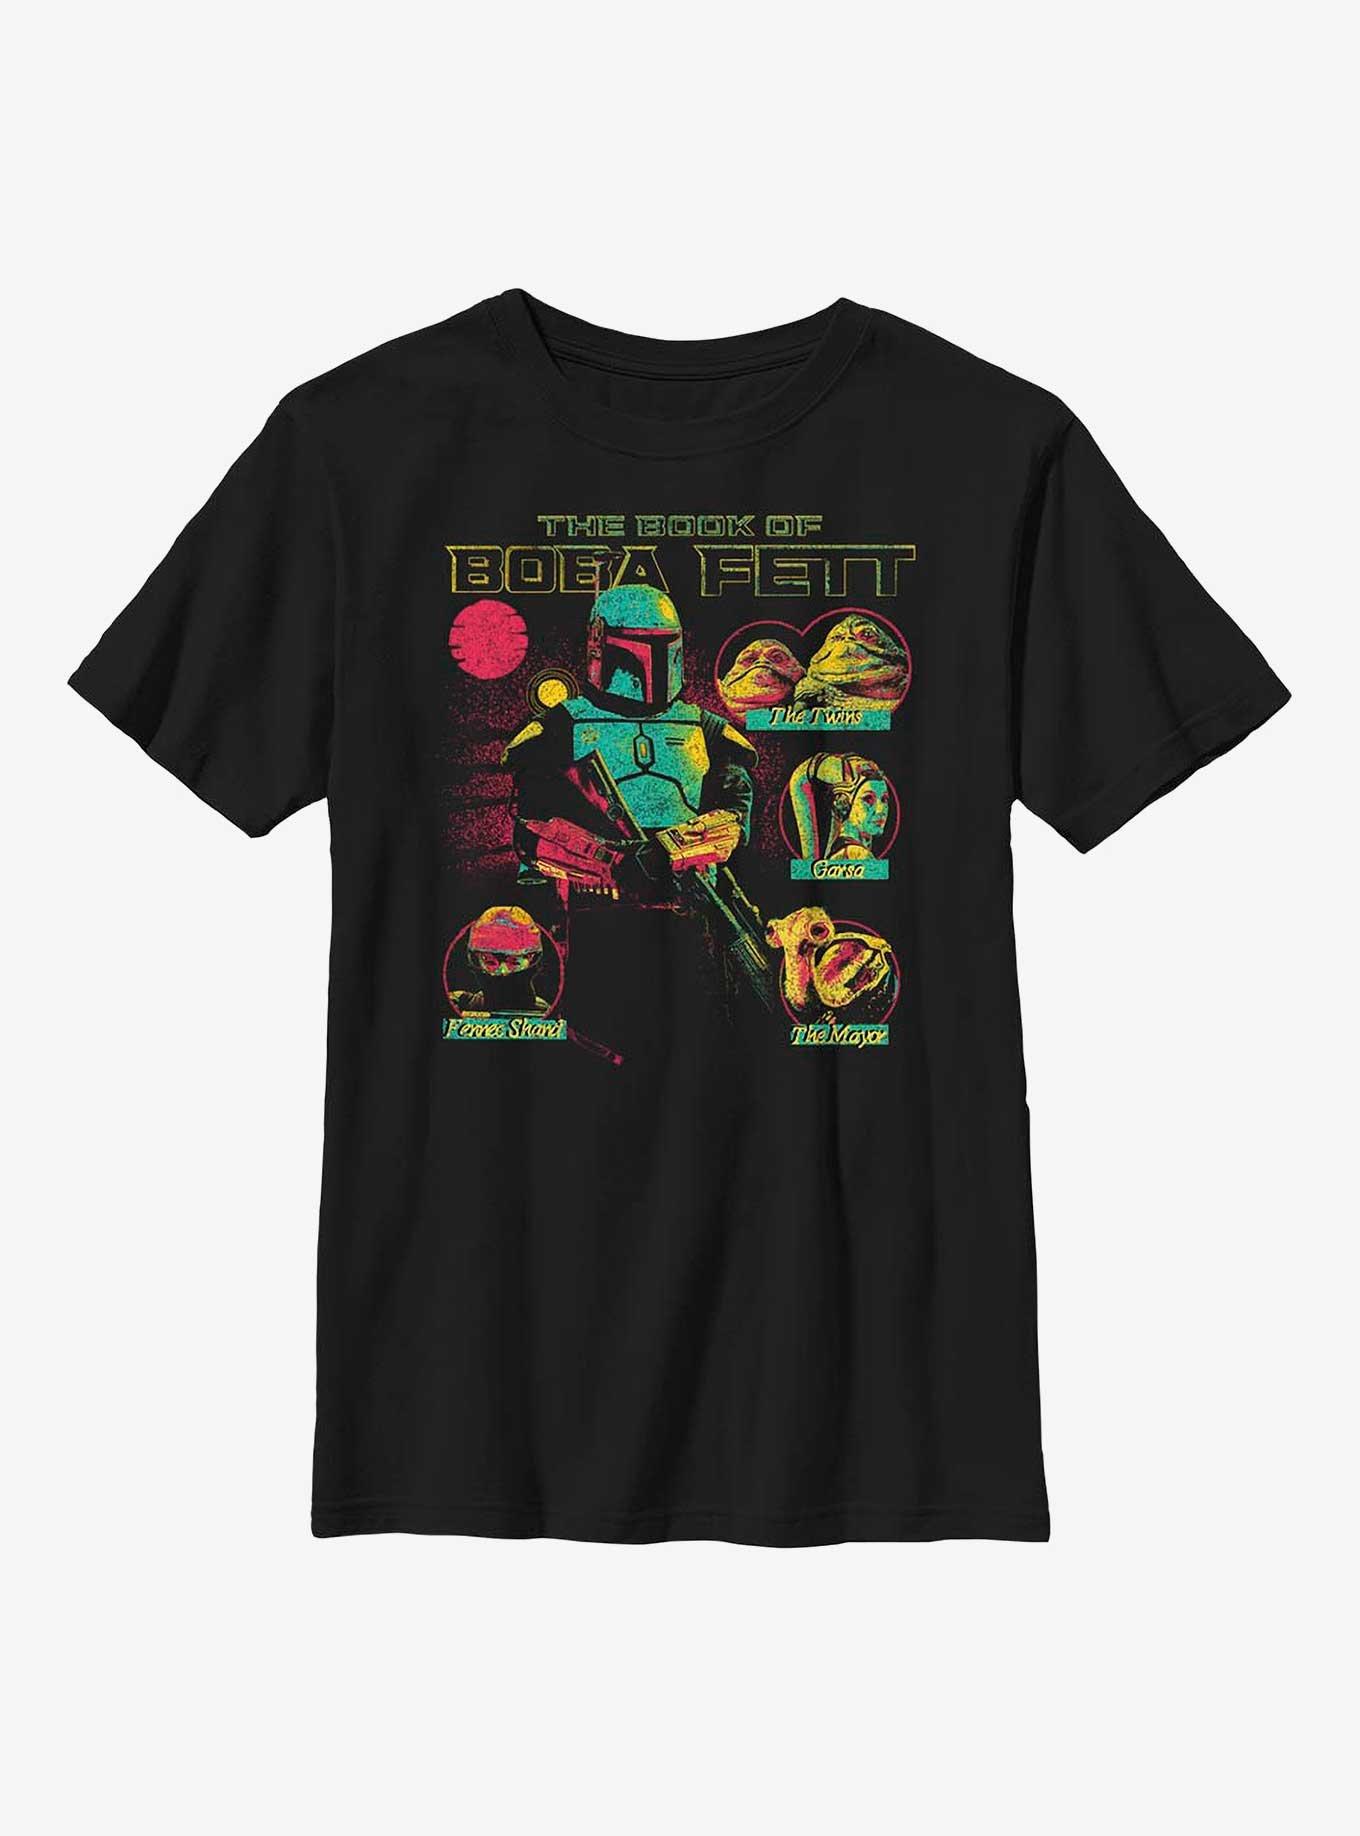 Star Wars Book Of Boba Fett Character Circles Youth T-Shirt, BLACK, hi-res